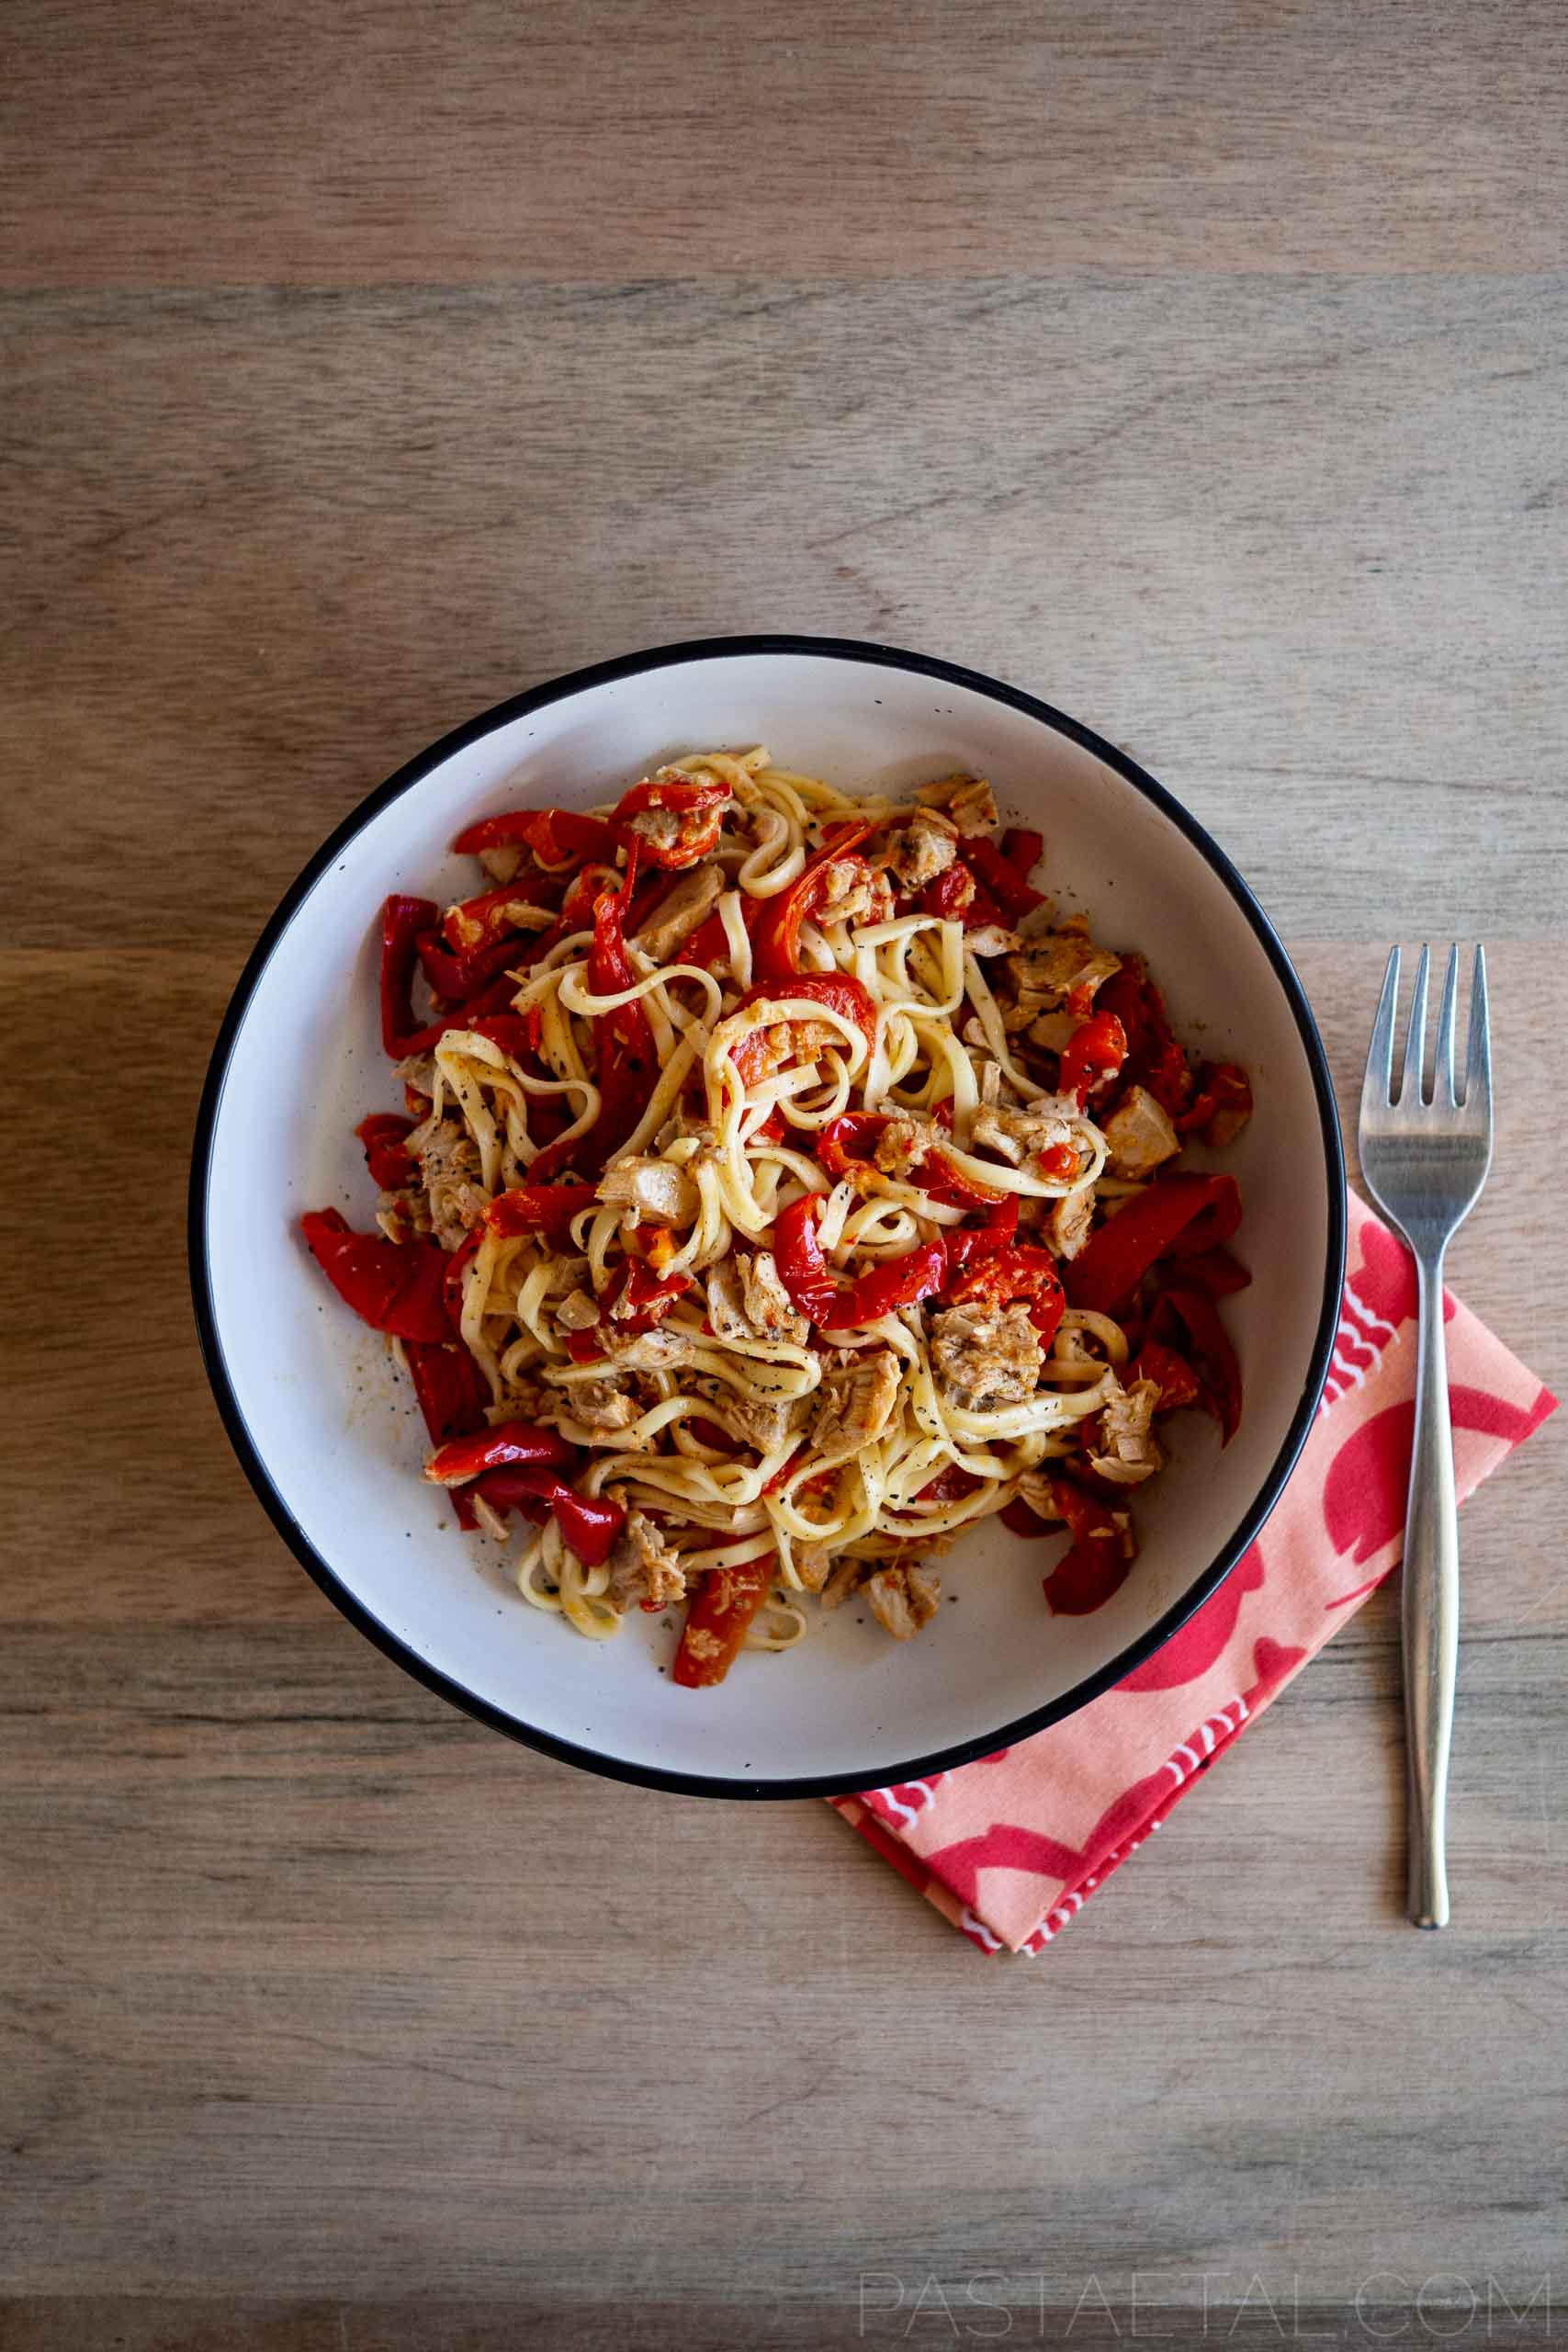 Spaghetti alla Chitarra with Capsicum and Homemade Tuna in Oil